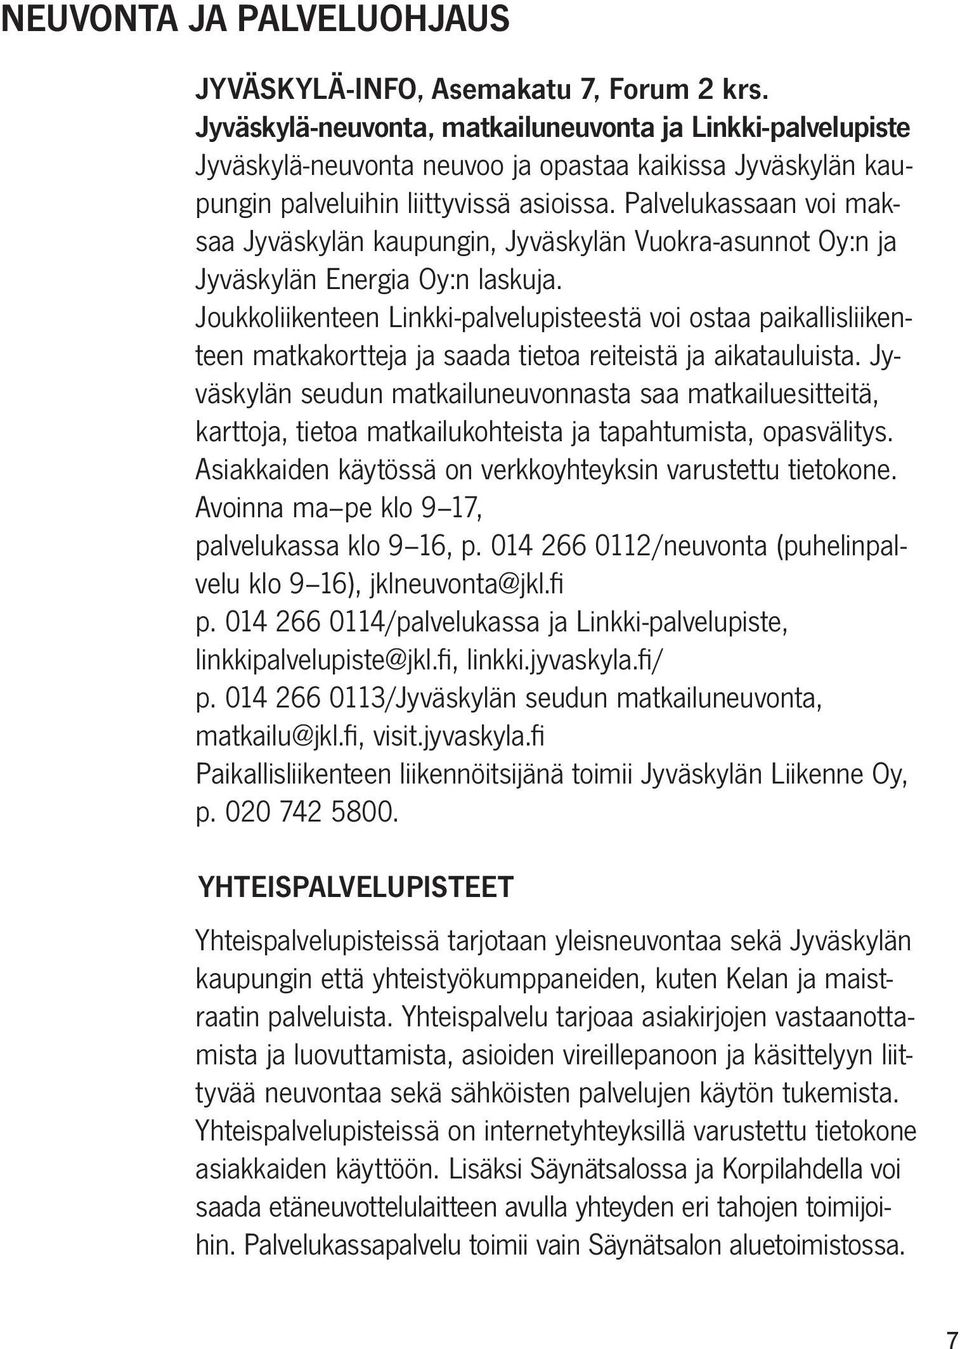 Palvelukassaan voi maksaa Jyväskylän kaupungin, Jyväskylän Vuokra-asunnot Oy:n ja Jyväskylän Energia Oy:n laskuja.